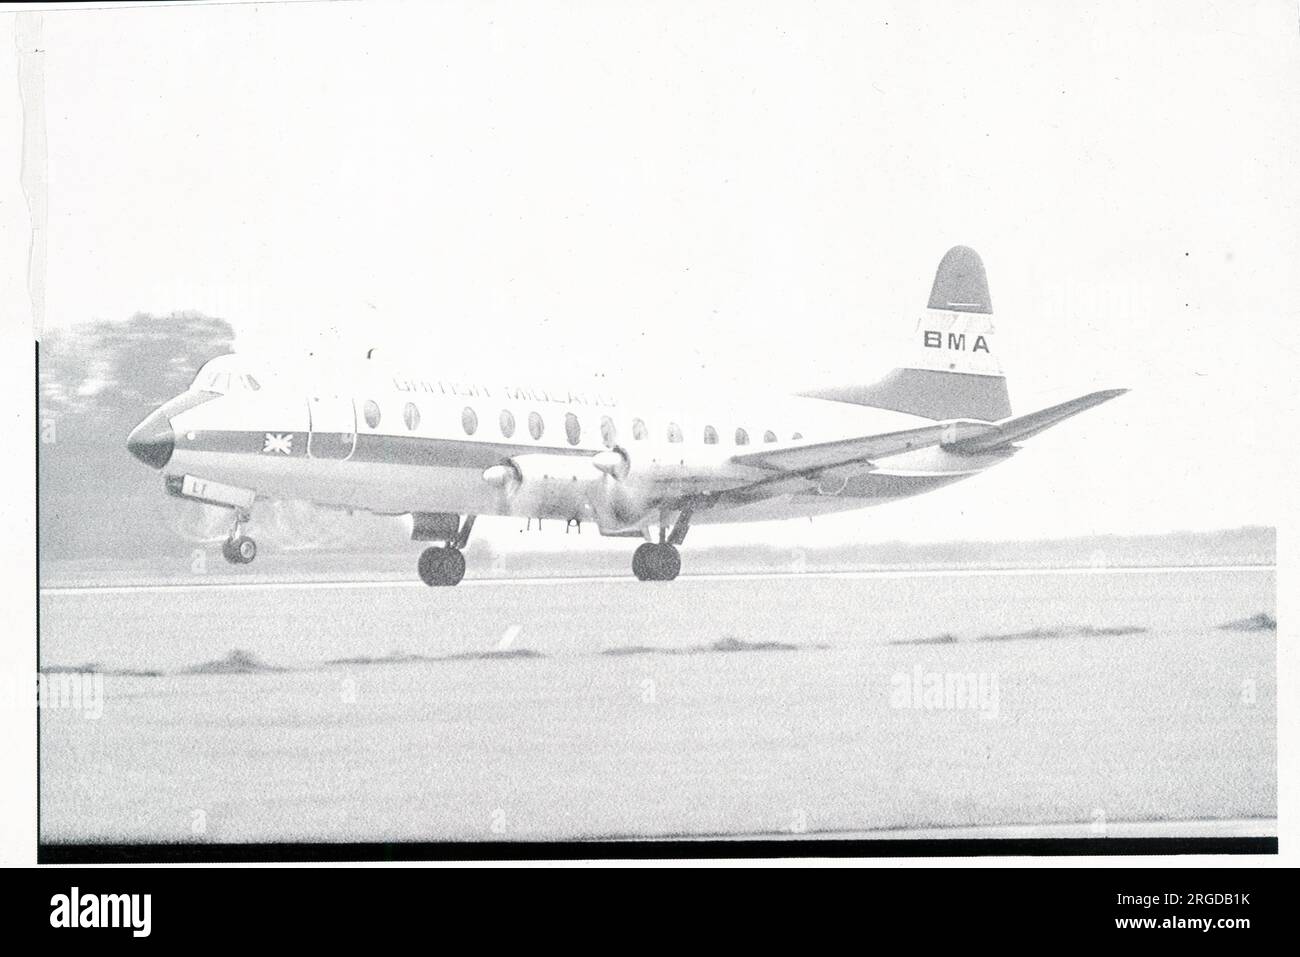 Skilton & Fry numéro 21302 - Vickers Viscount impression de cartes postales numéro positif 1 Banque D'Images